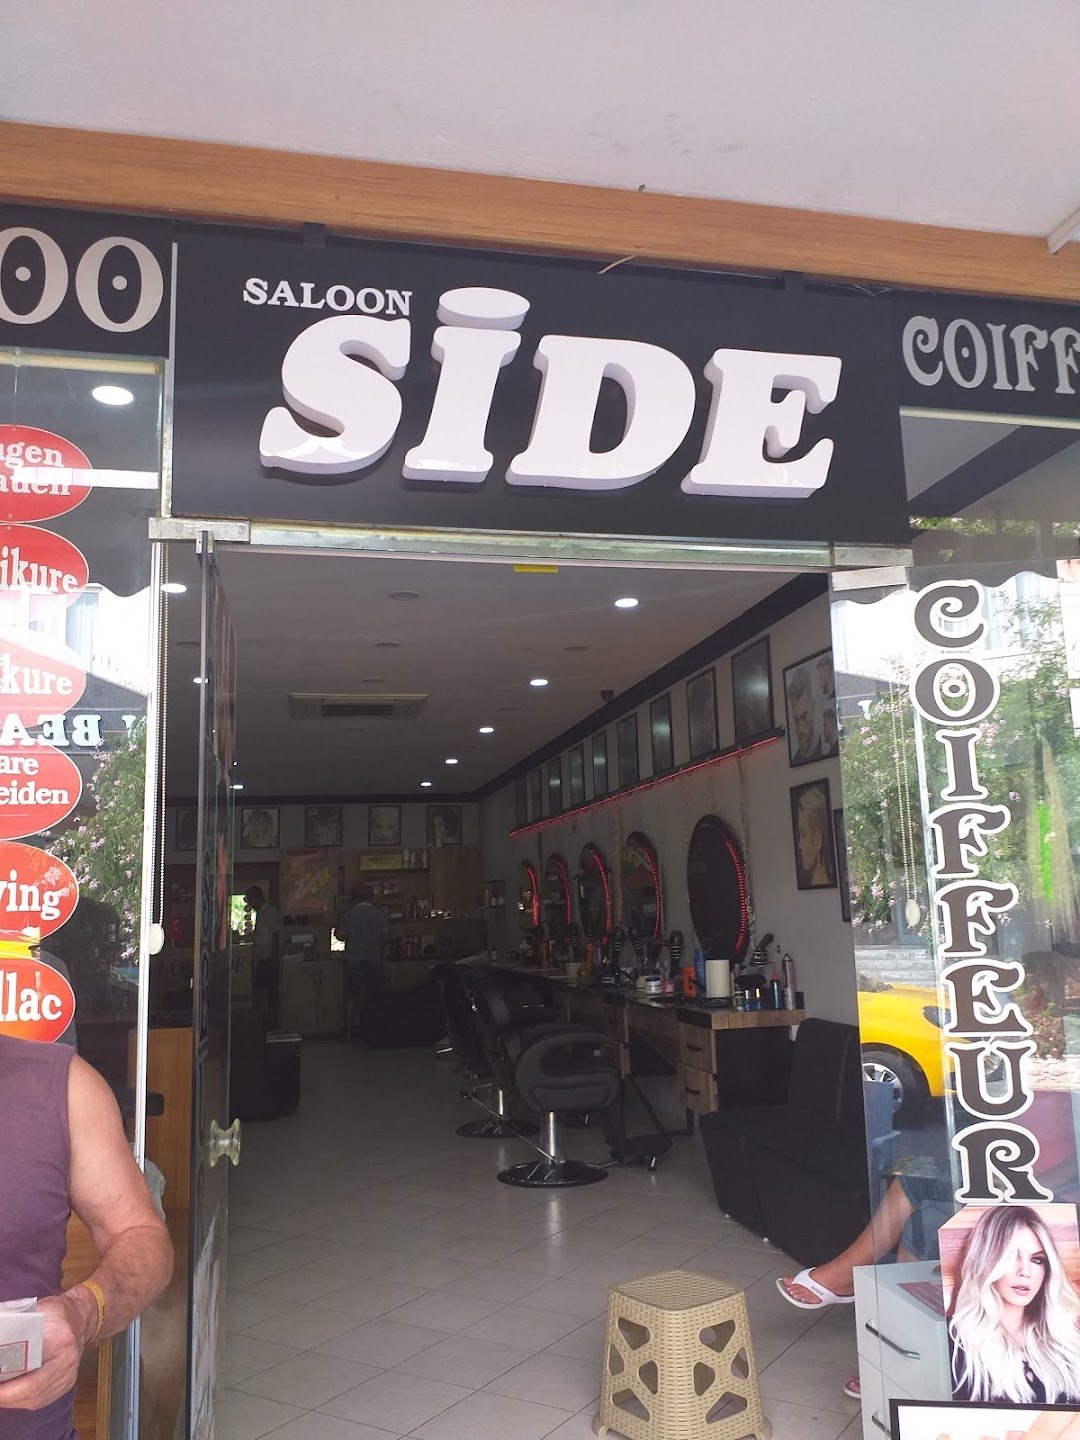 Saloon Side